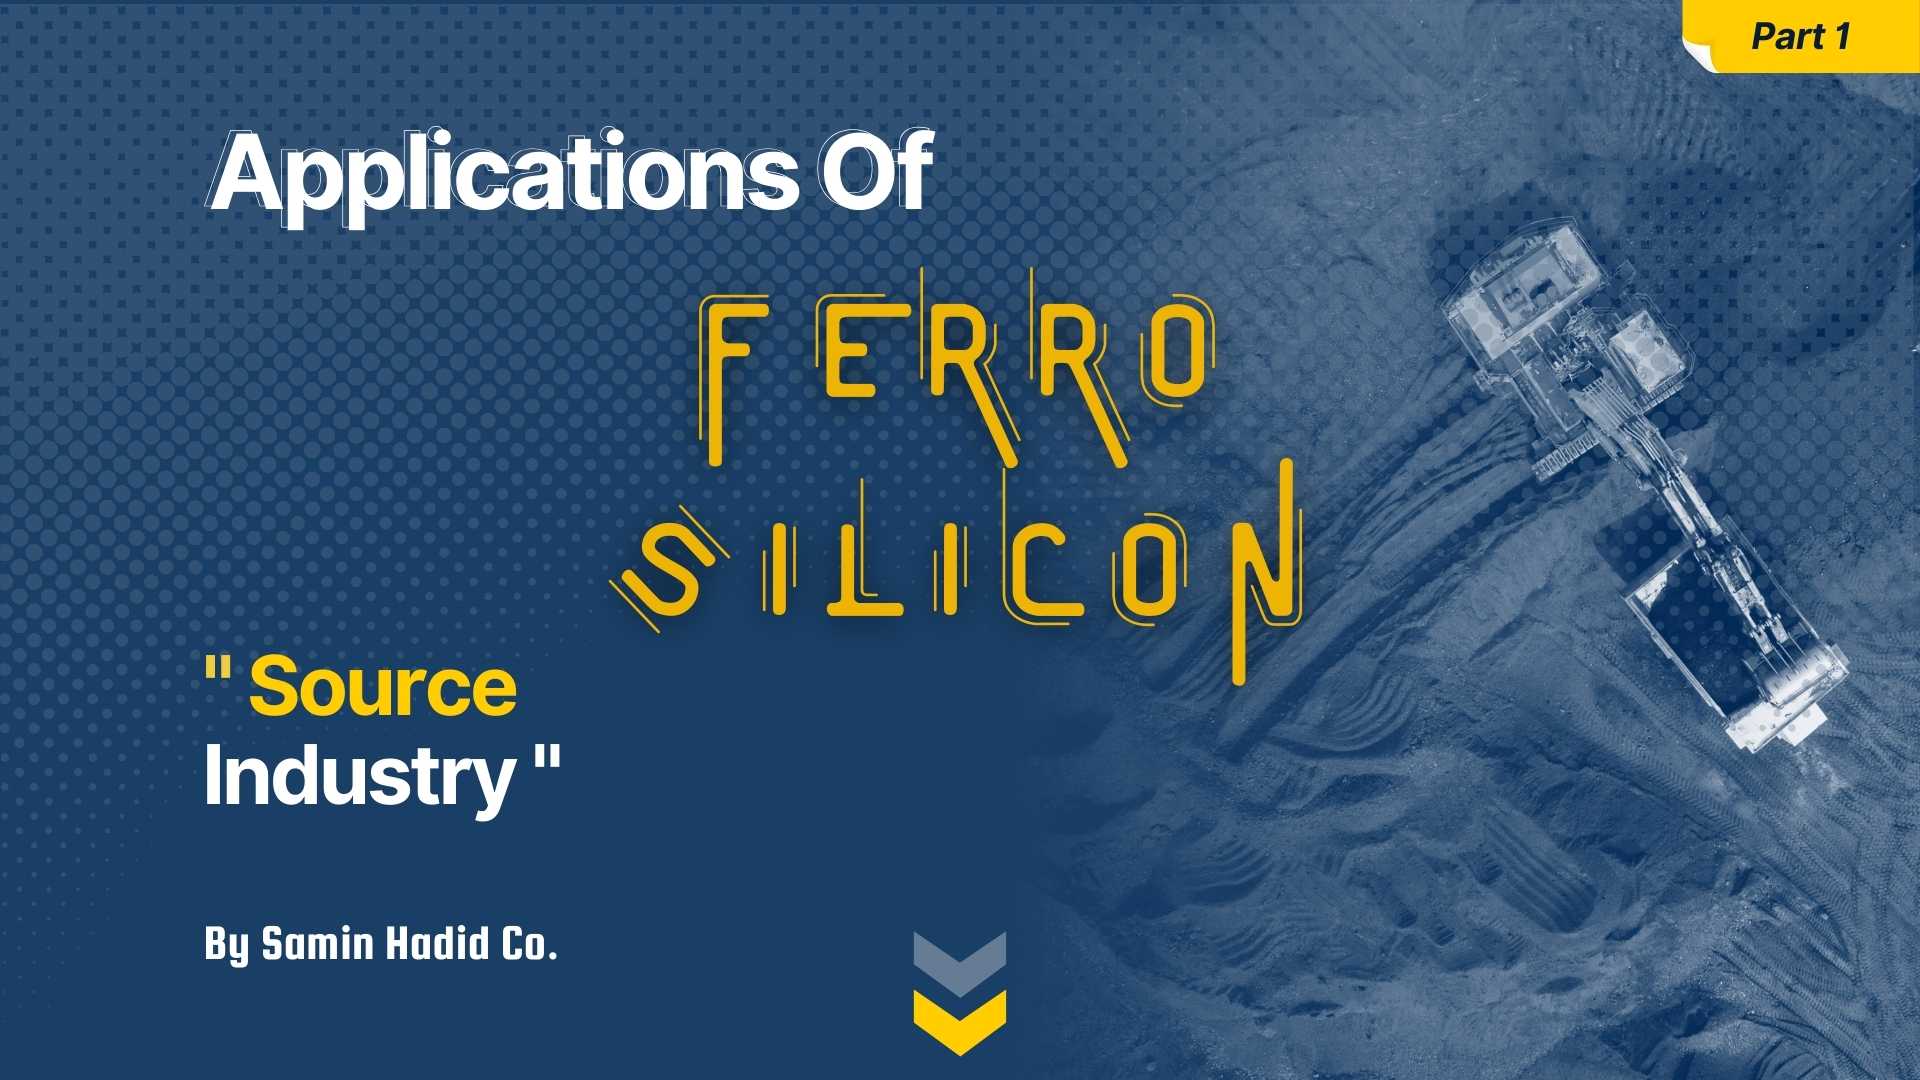 ferro silicon applications